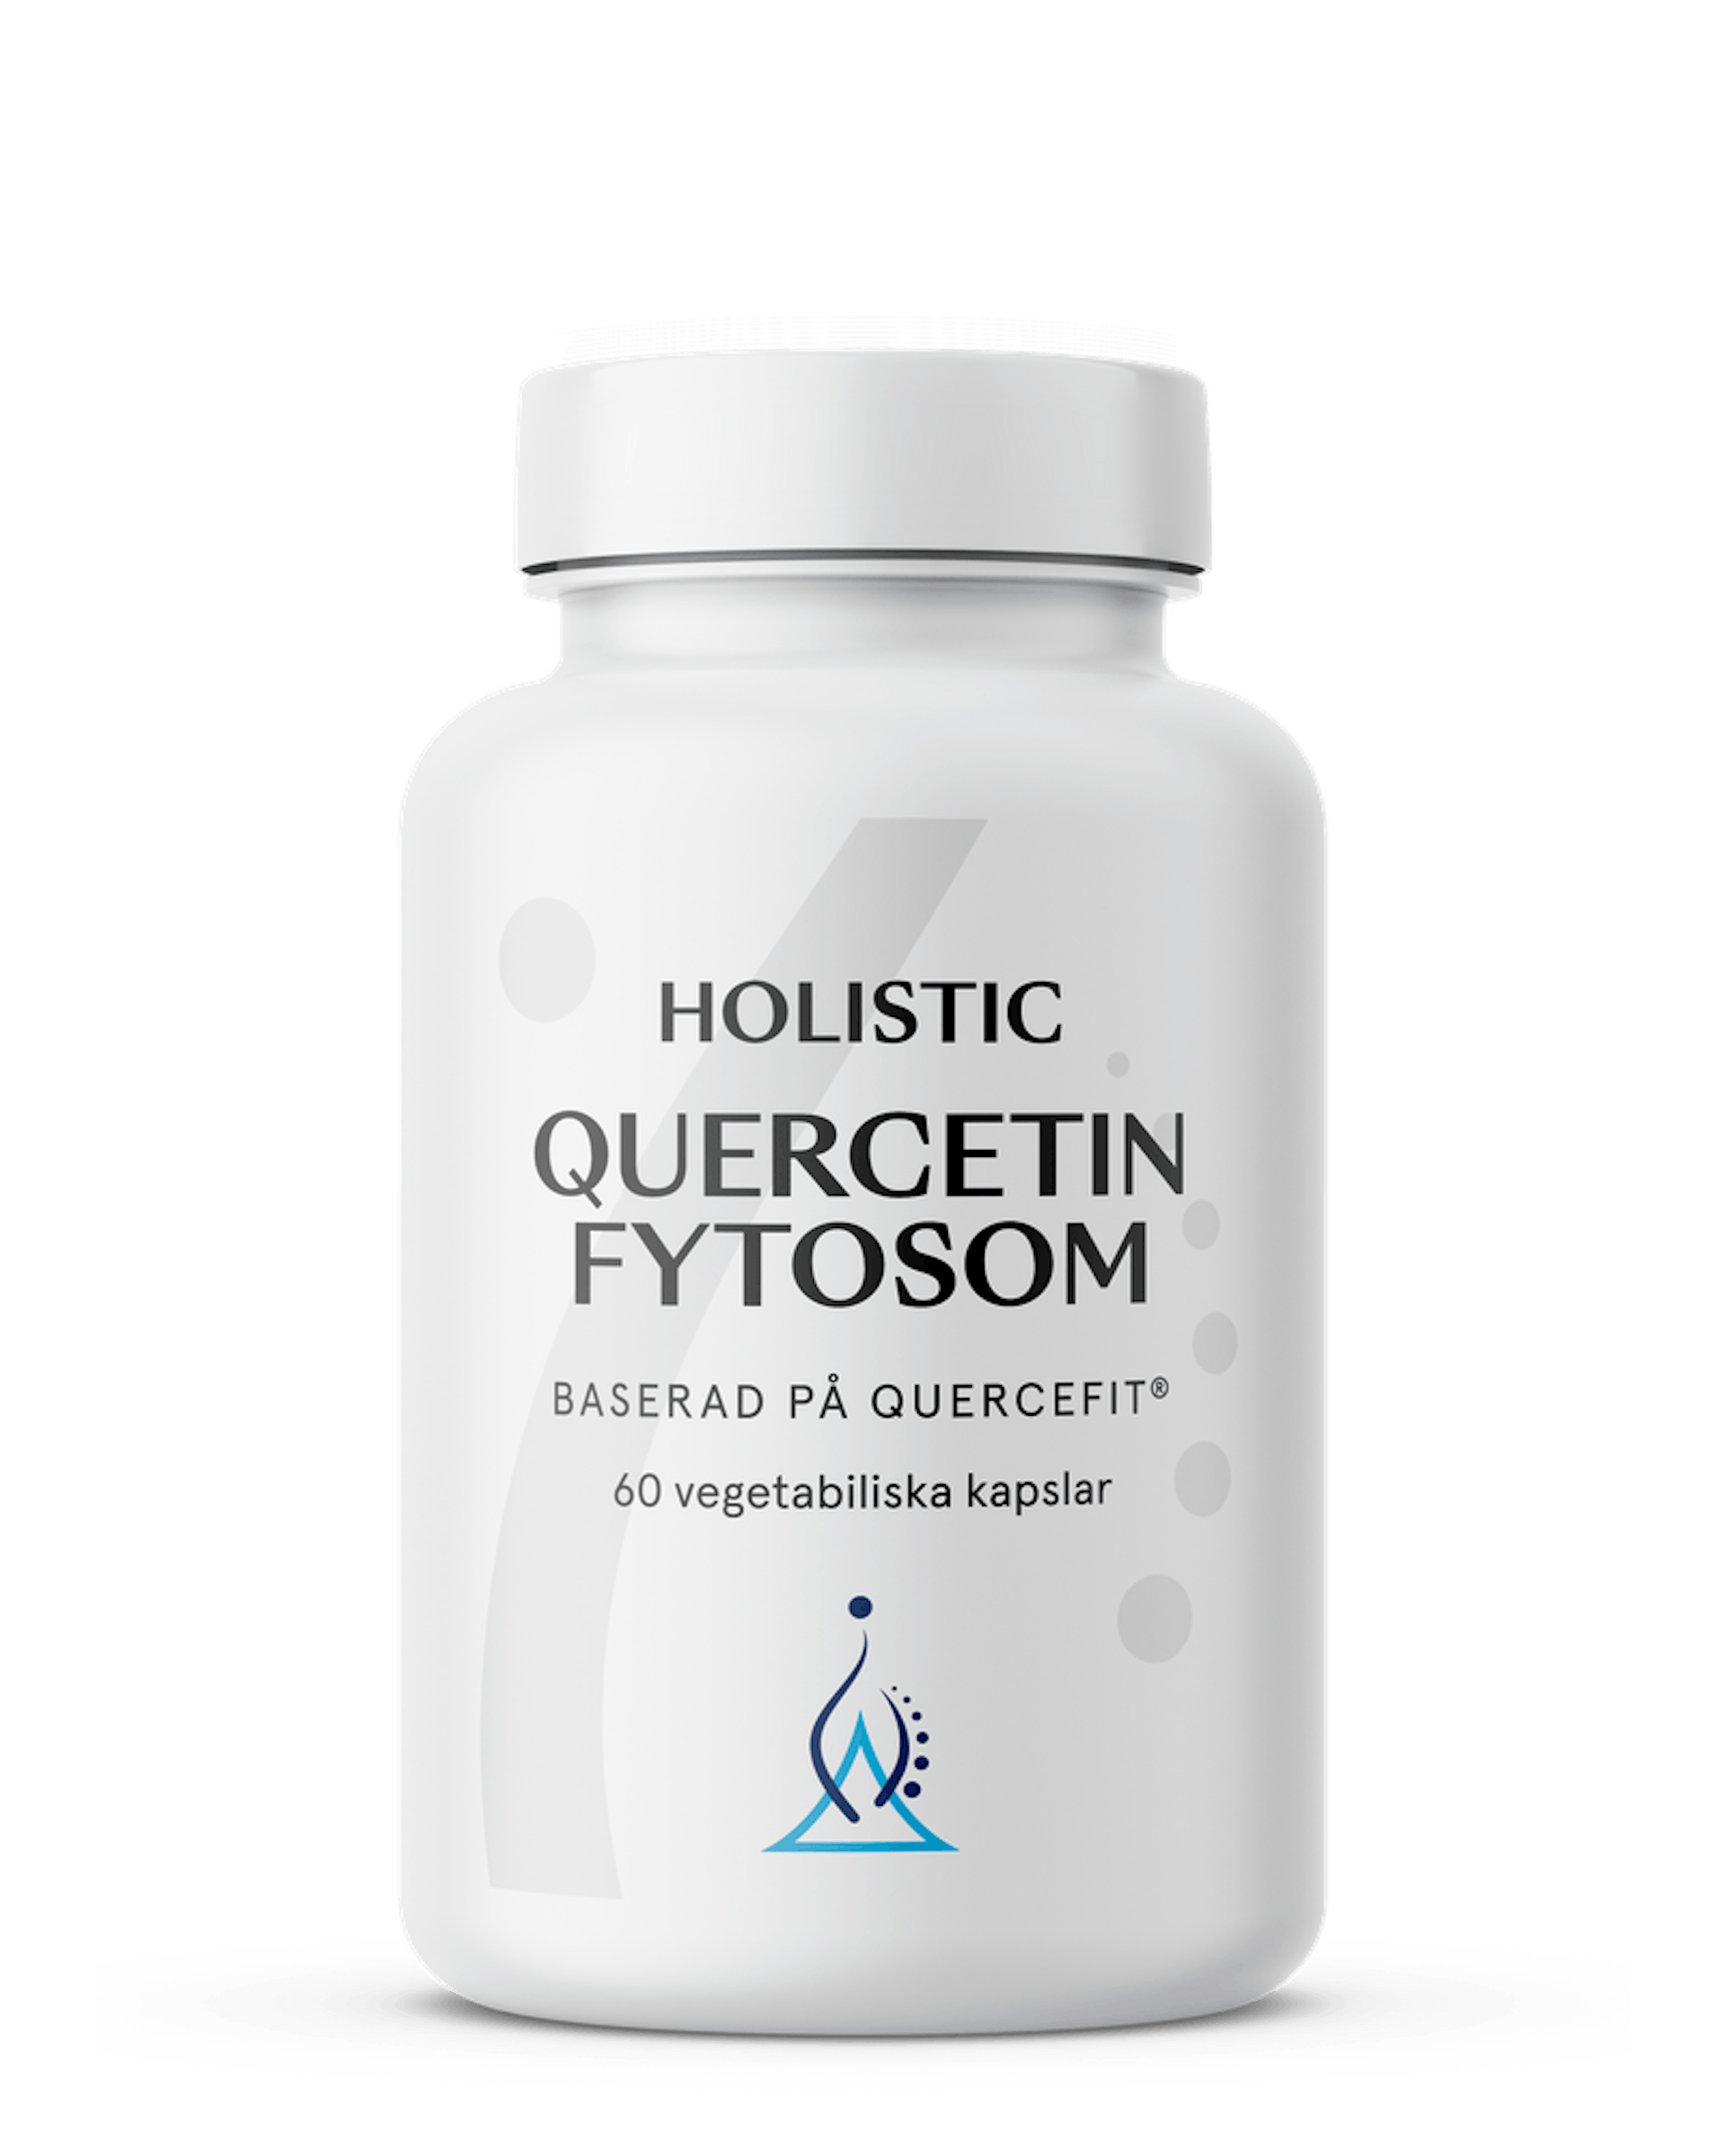 Quercetin fytosom, 60 kapslar (1 av 1)